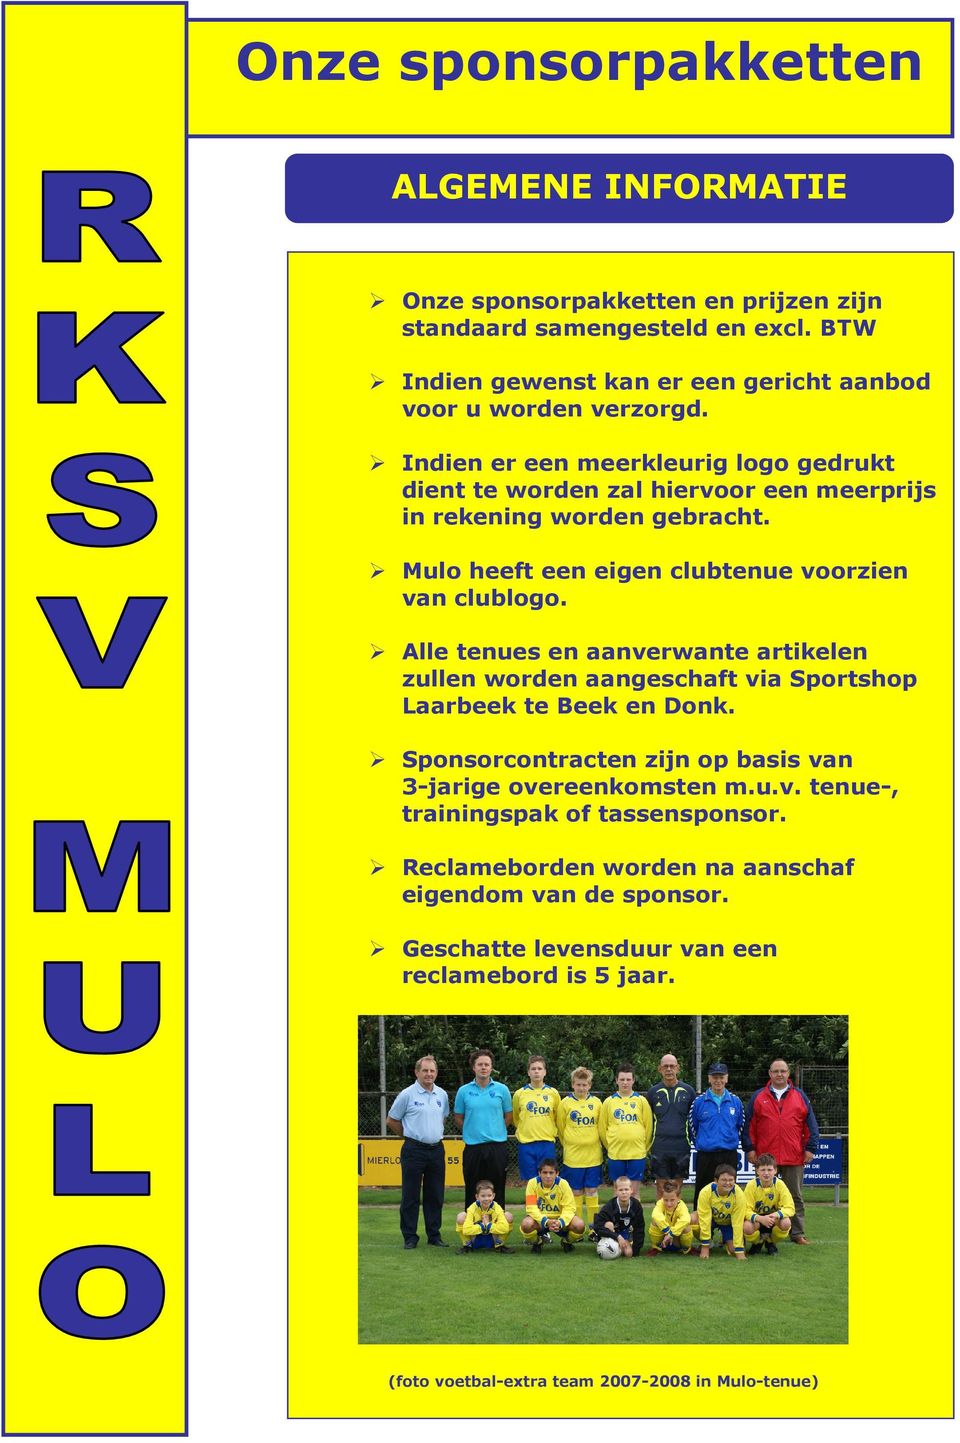 Mulo heeft een eigen clubtenue voorzien van clublogo. Alle tenues en aanverwante artikelen zullen worden aangeschaft via Sportshop Laarbeek te Beek en Donk.